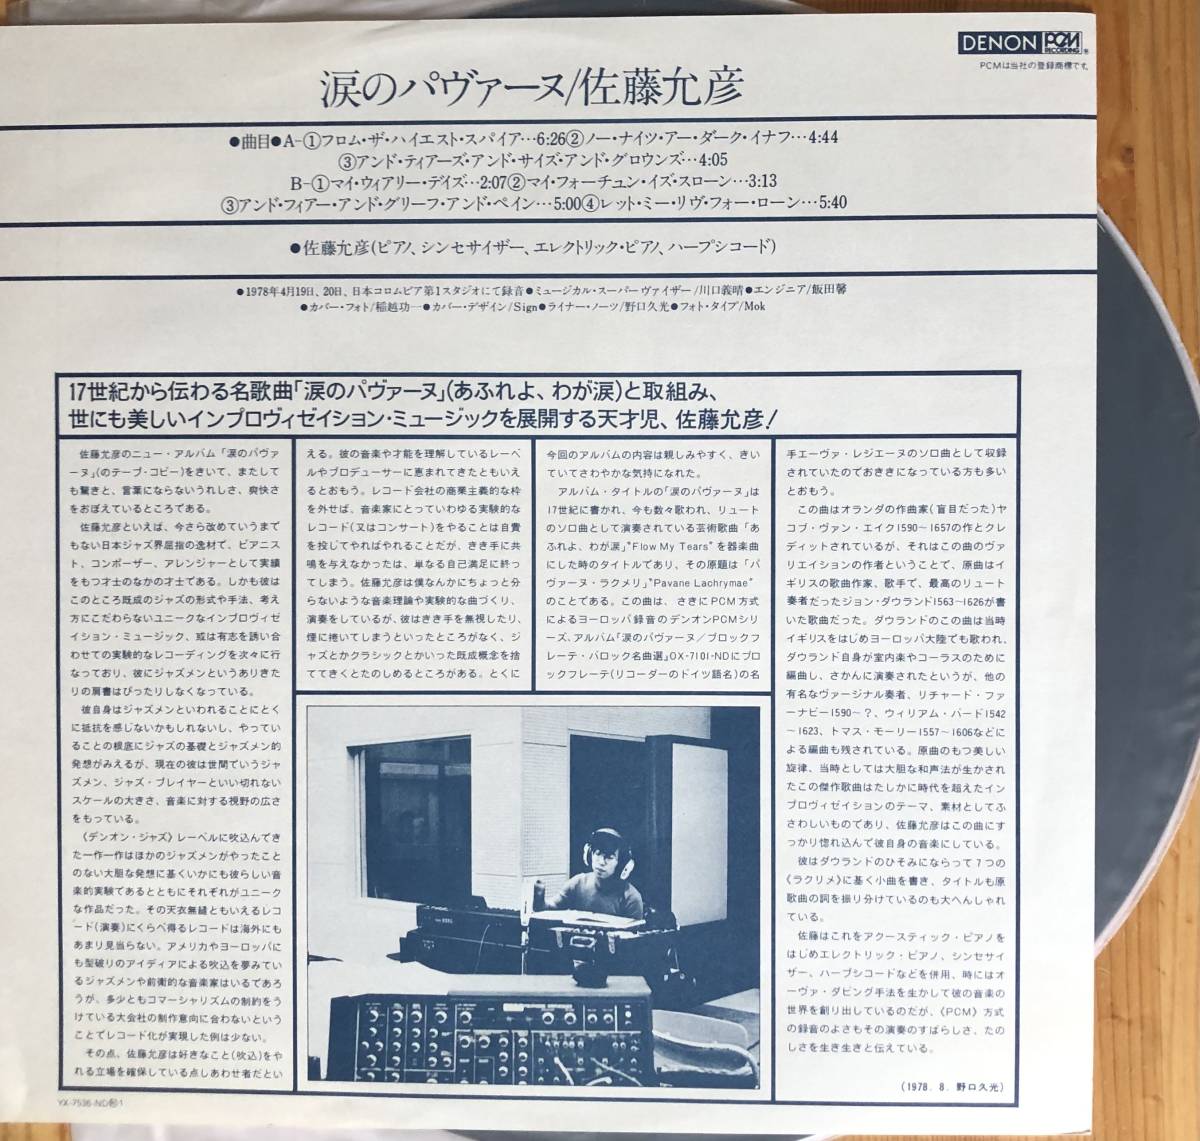 佐藤允彦 PAVANE LACHRYMAE 涙のパヴァーヌ LP レコード 和ジャズ_画像3